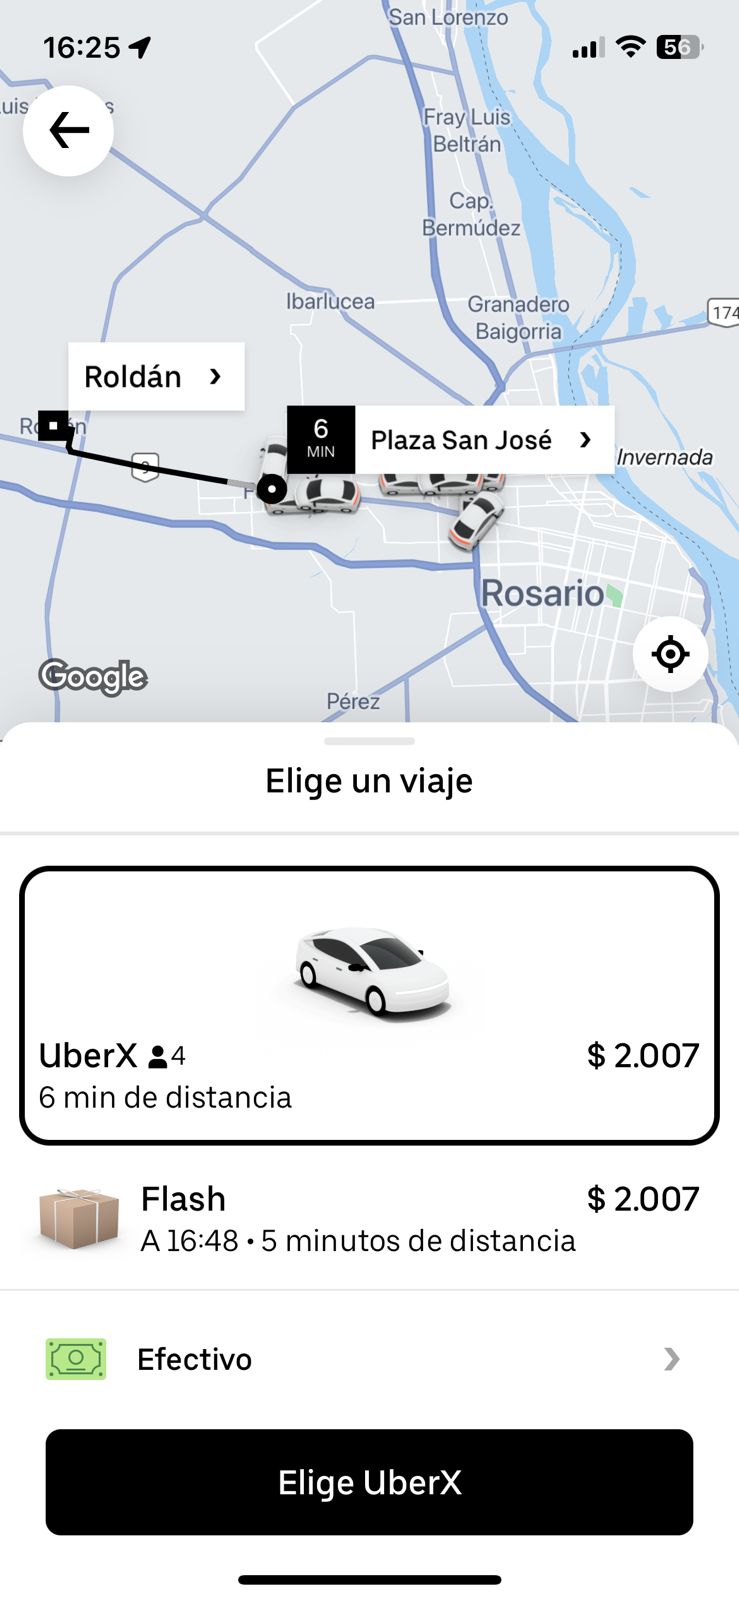 Simulación viaje en Uber desde el centro funense hasta el centro de Roldán.